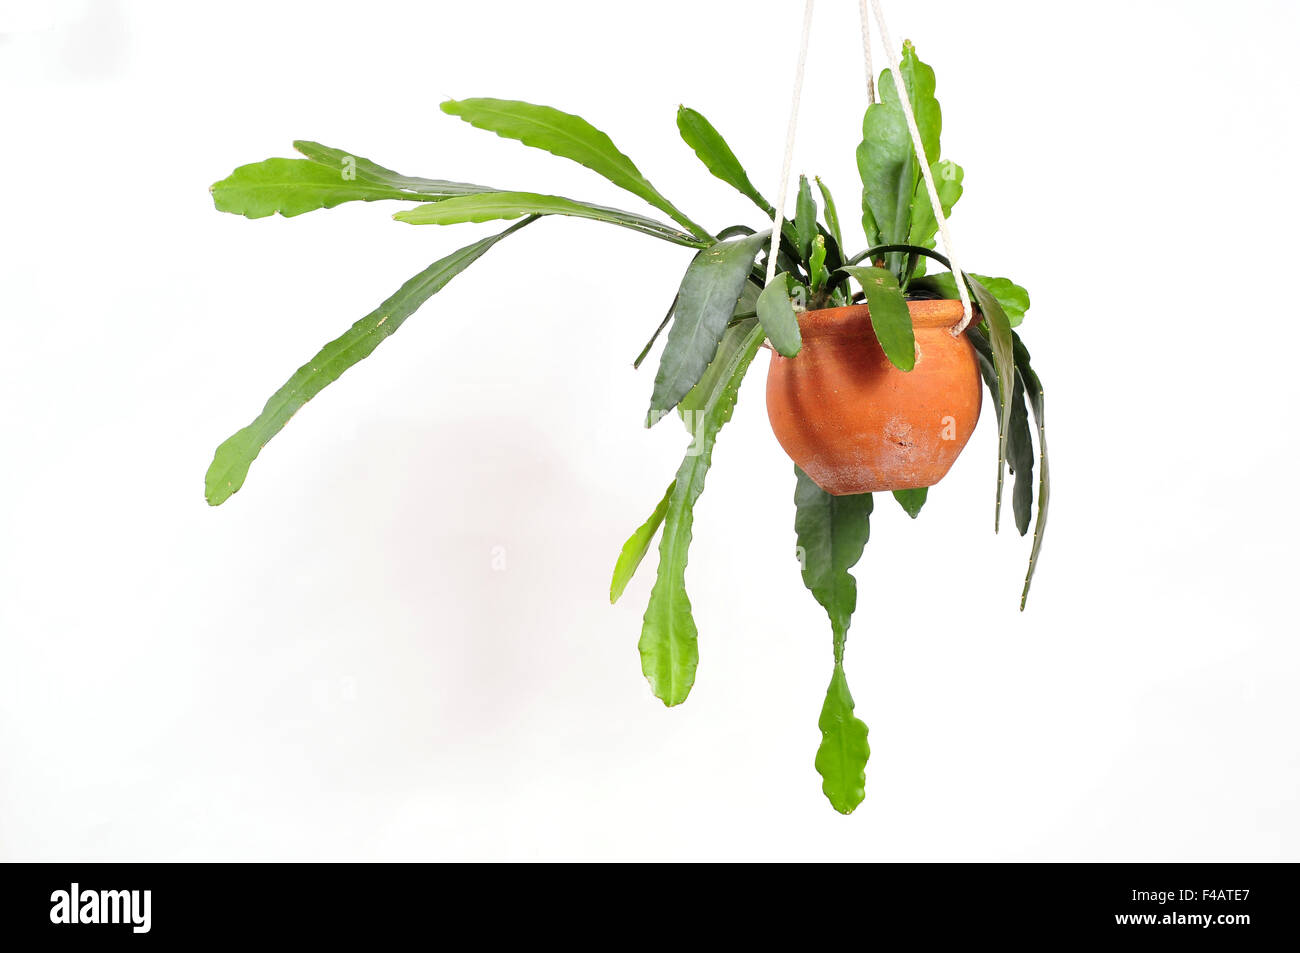 Hanging plant Epiphyllum Stock Photo